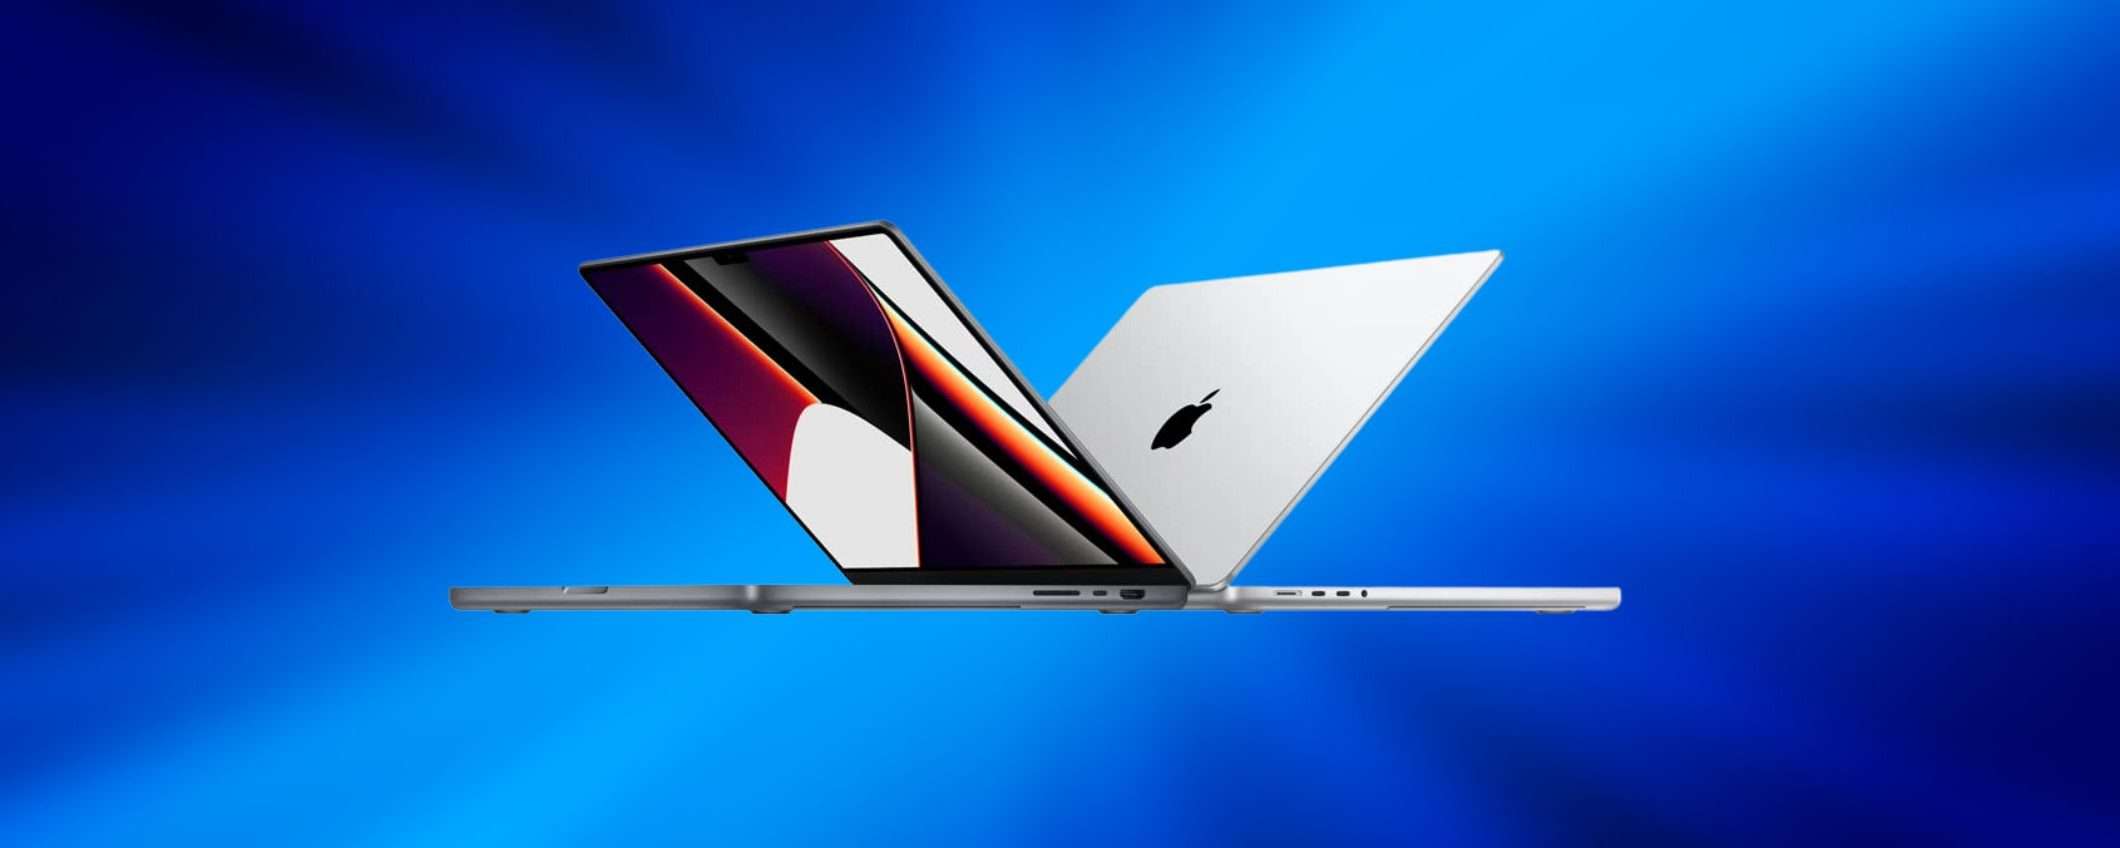 MacBook Pro: offertissima Amazon, risparmi subito 350 euro